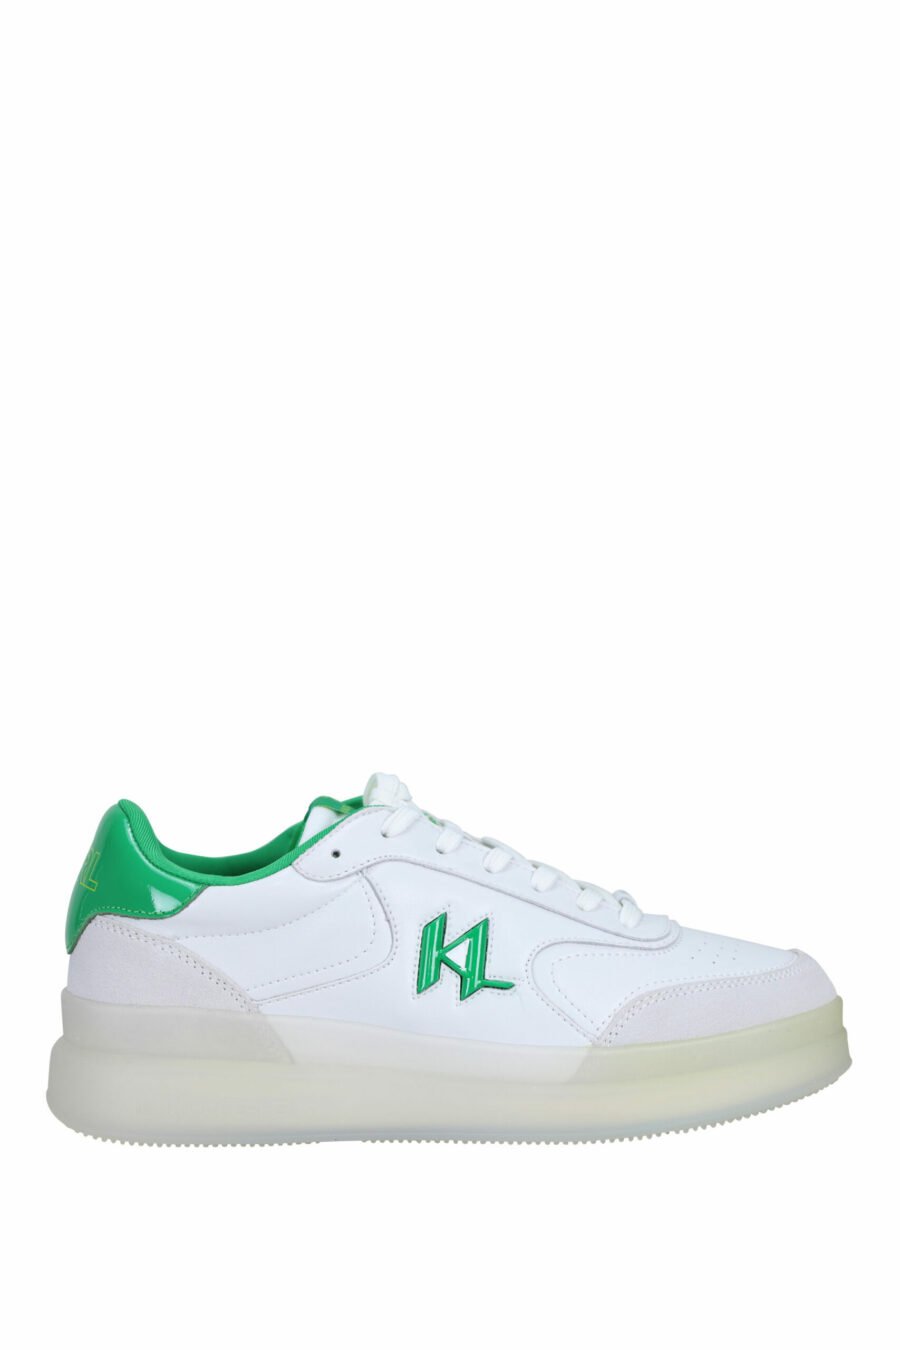 Zapatillas blancas y gris "brink" con detalles verdes - 5059529294495 scaled